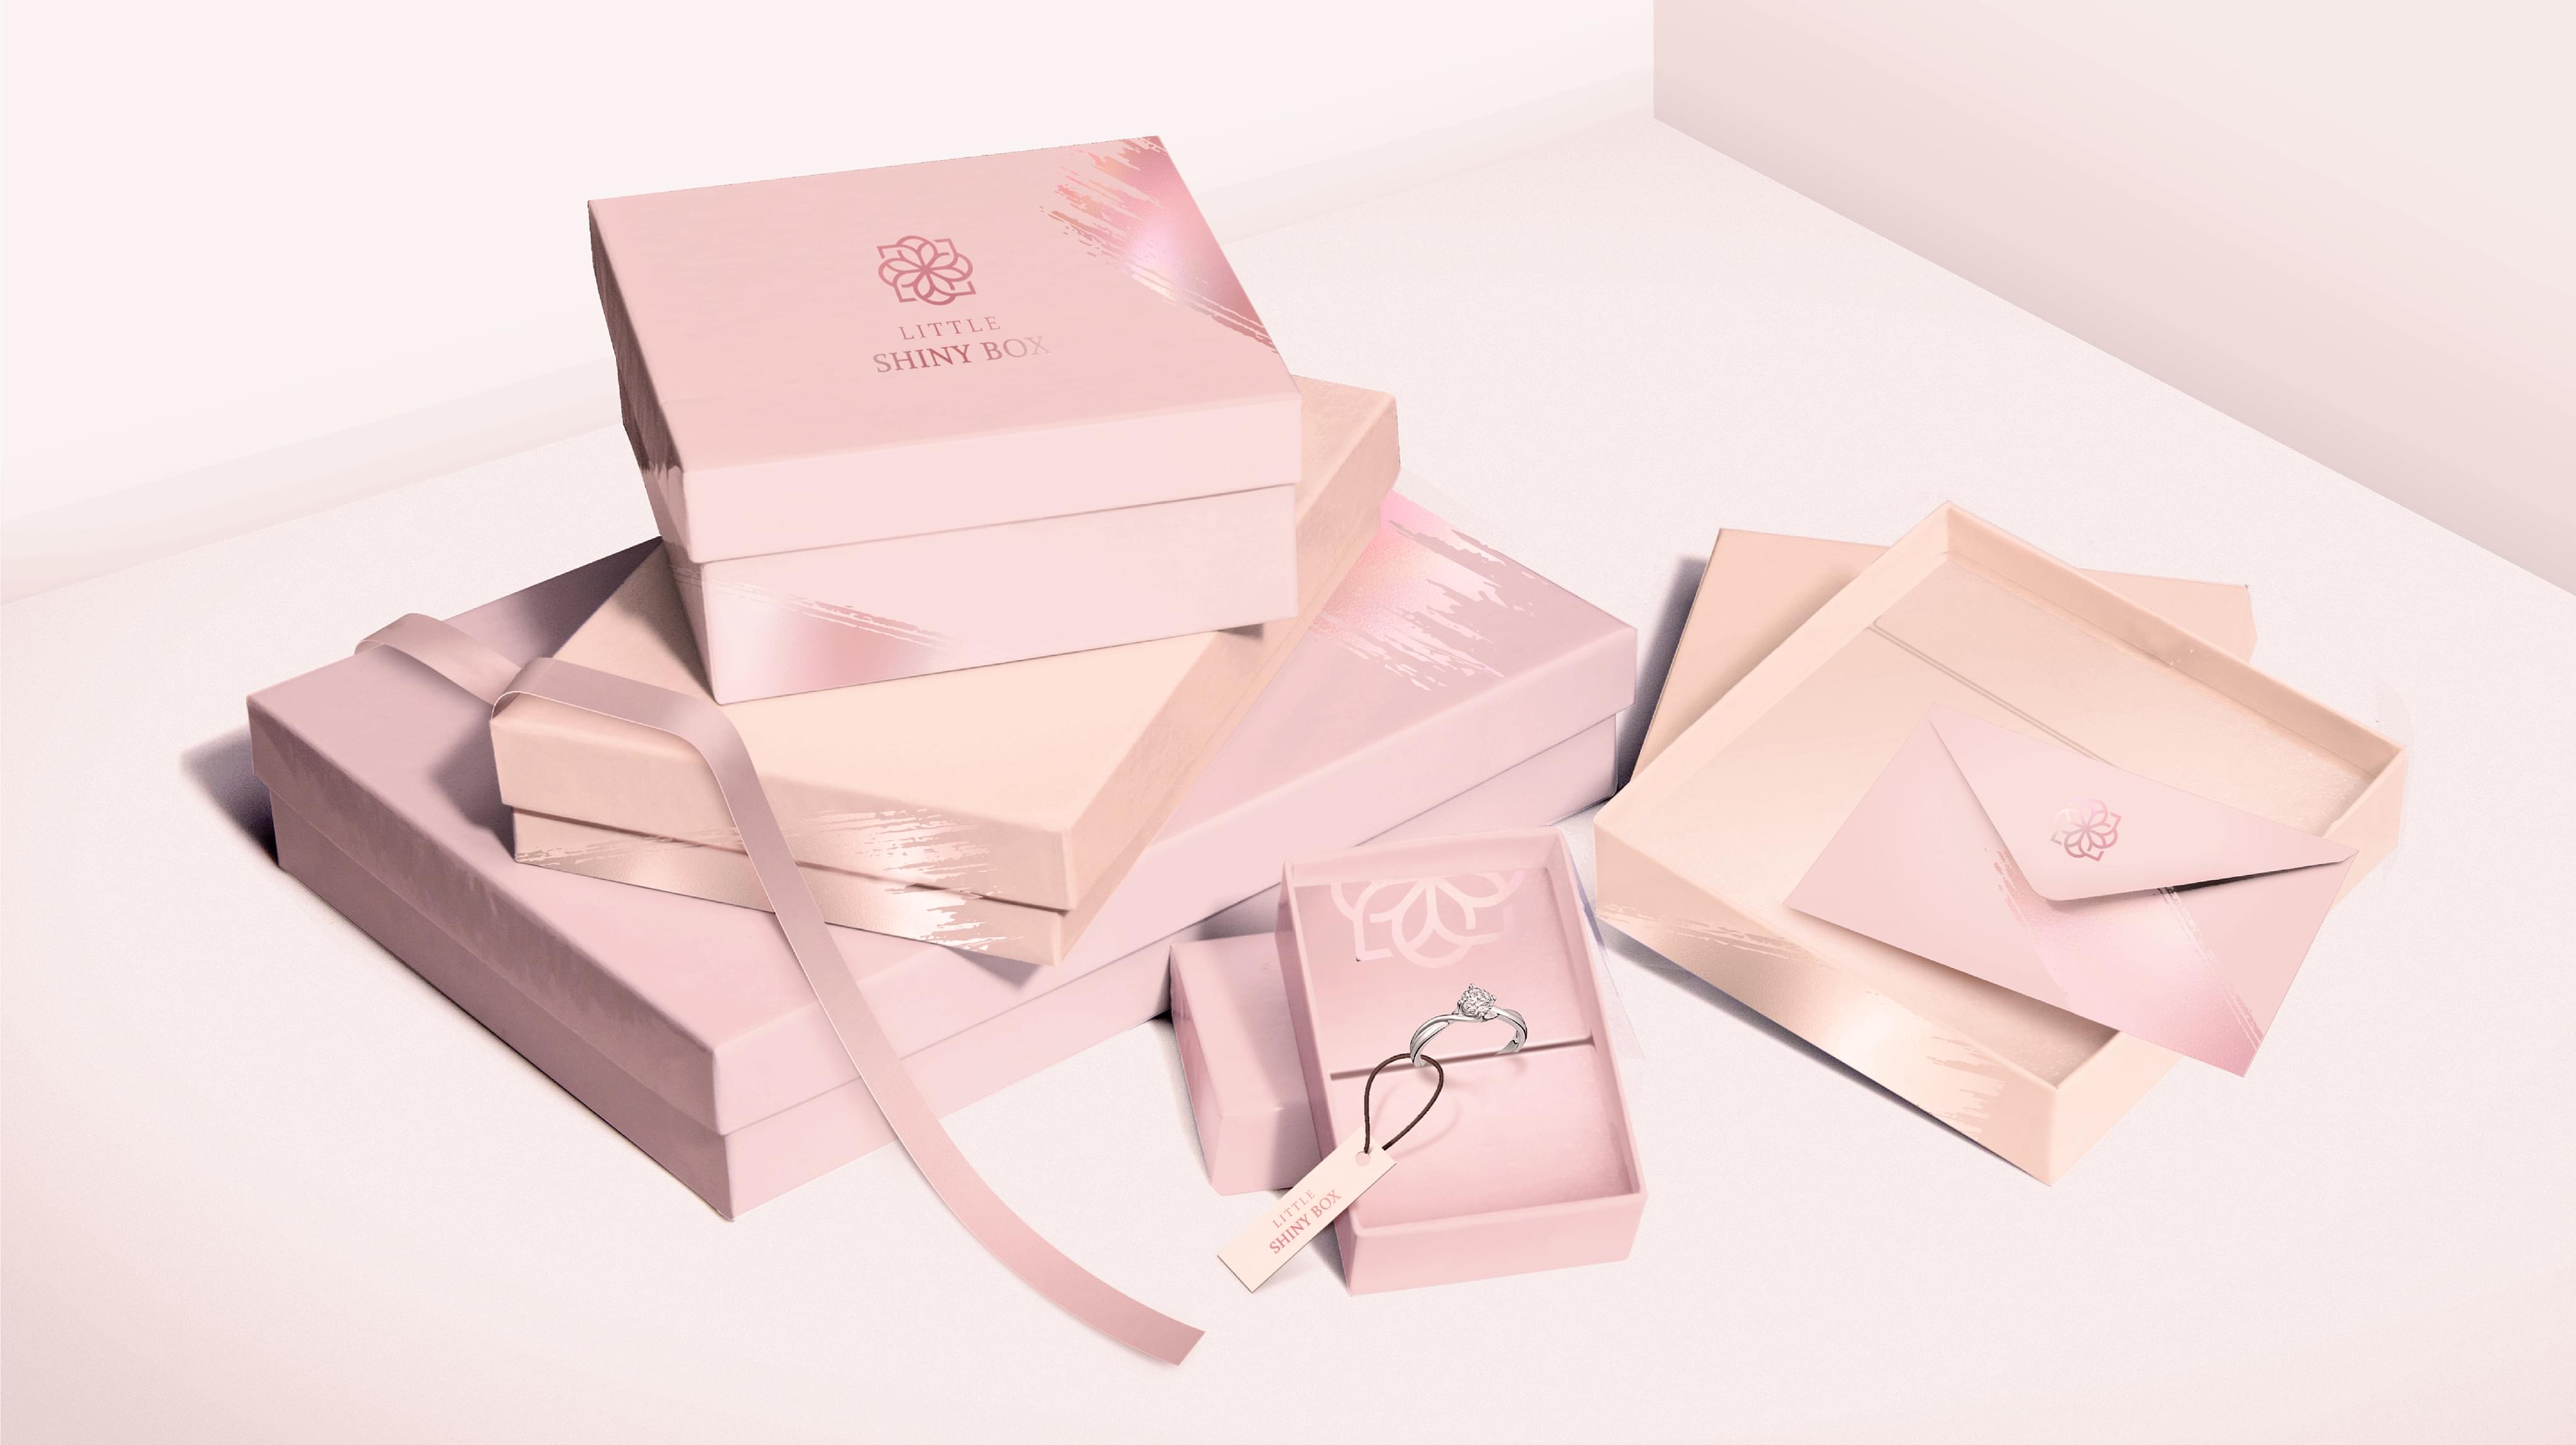 Little Shiny Box | Order #1 Creative Brand | Branding Agency Branding